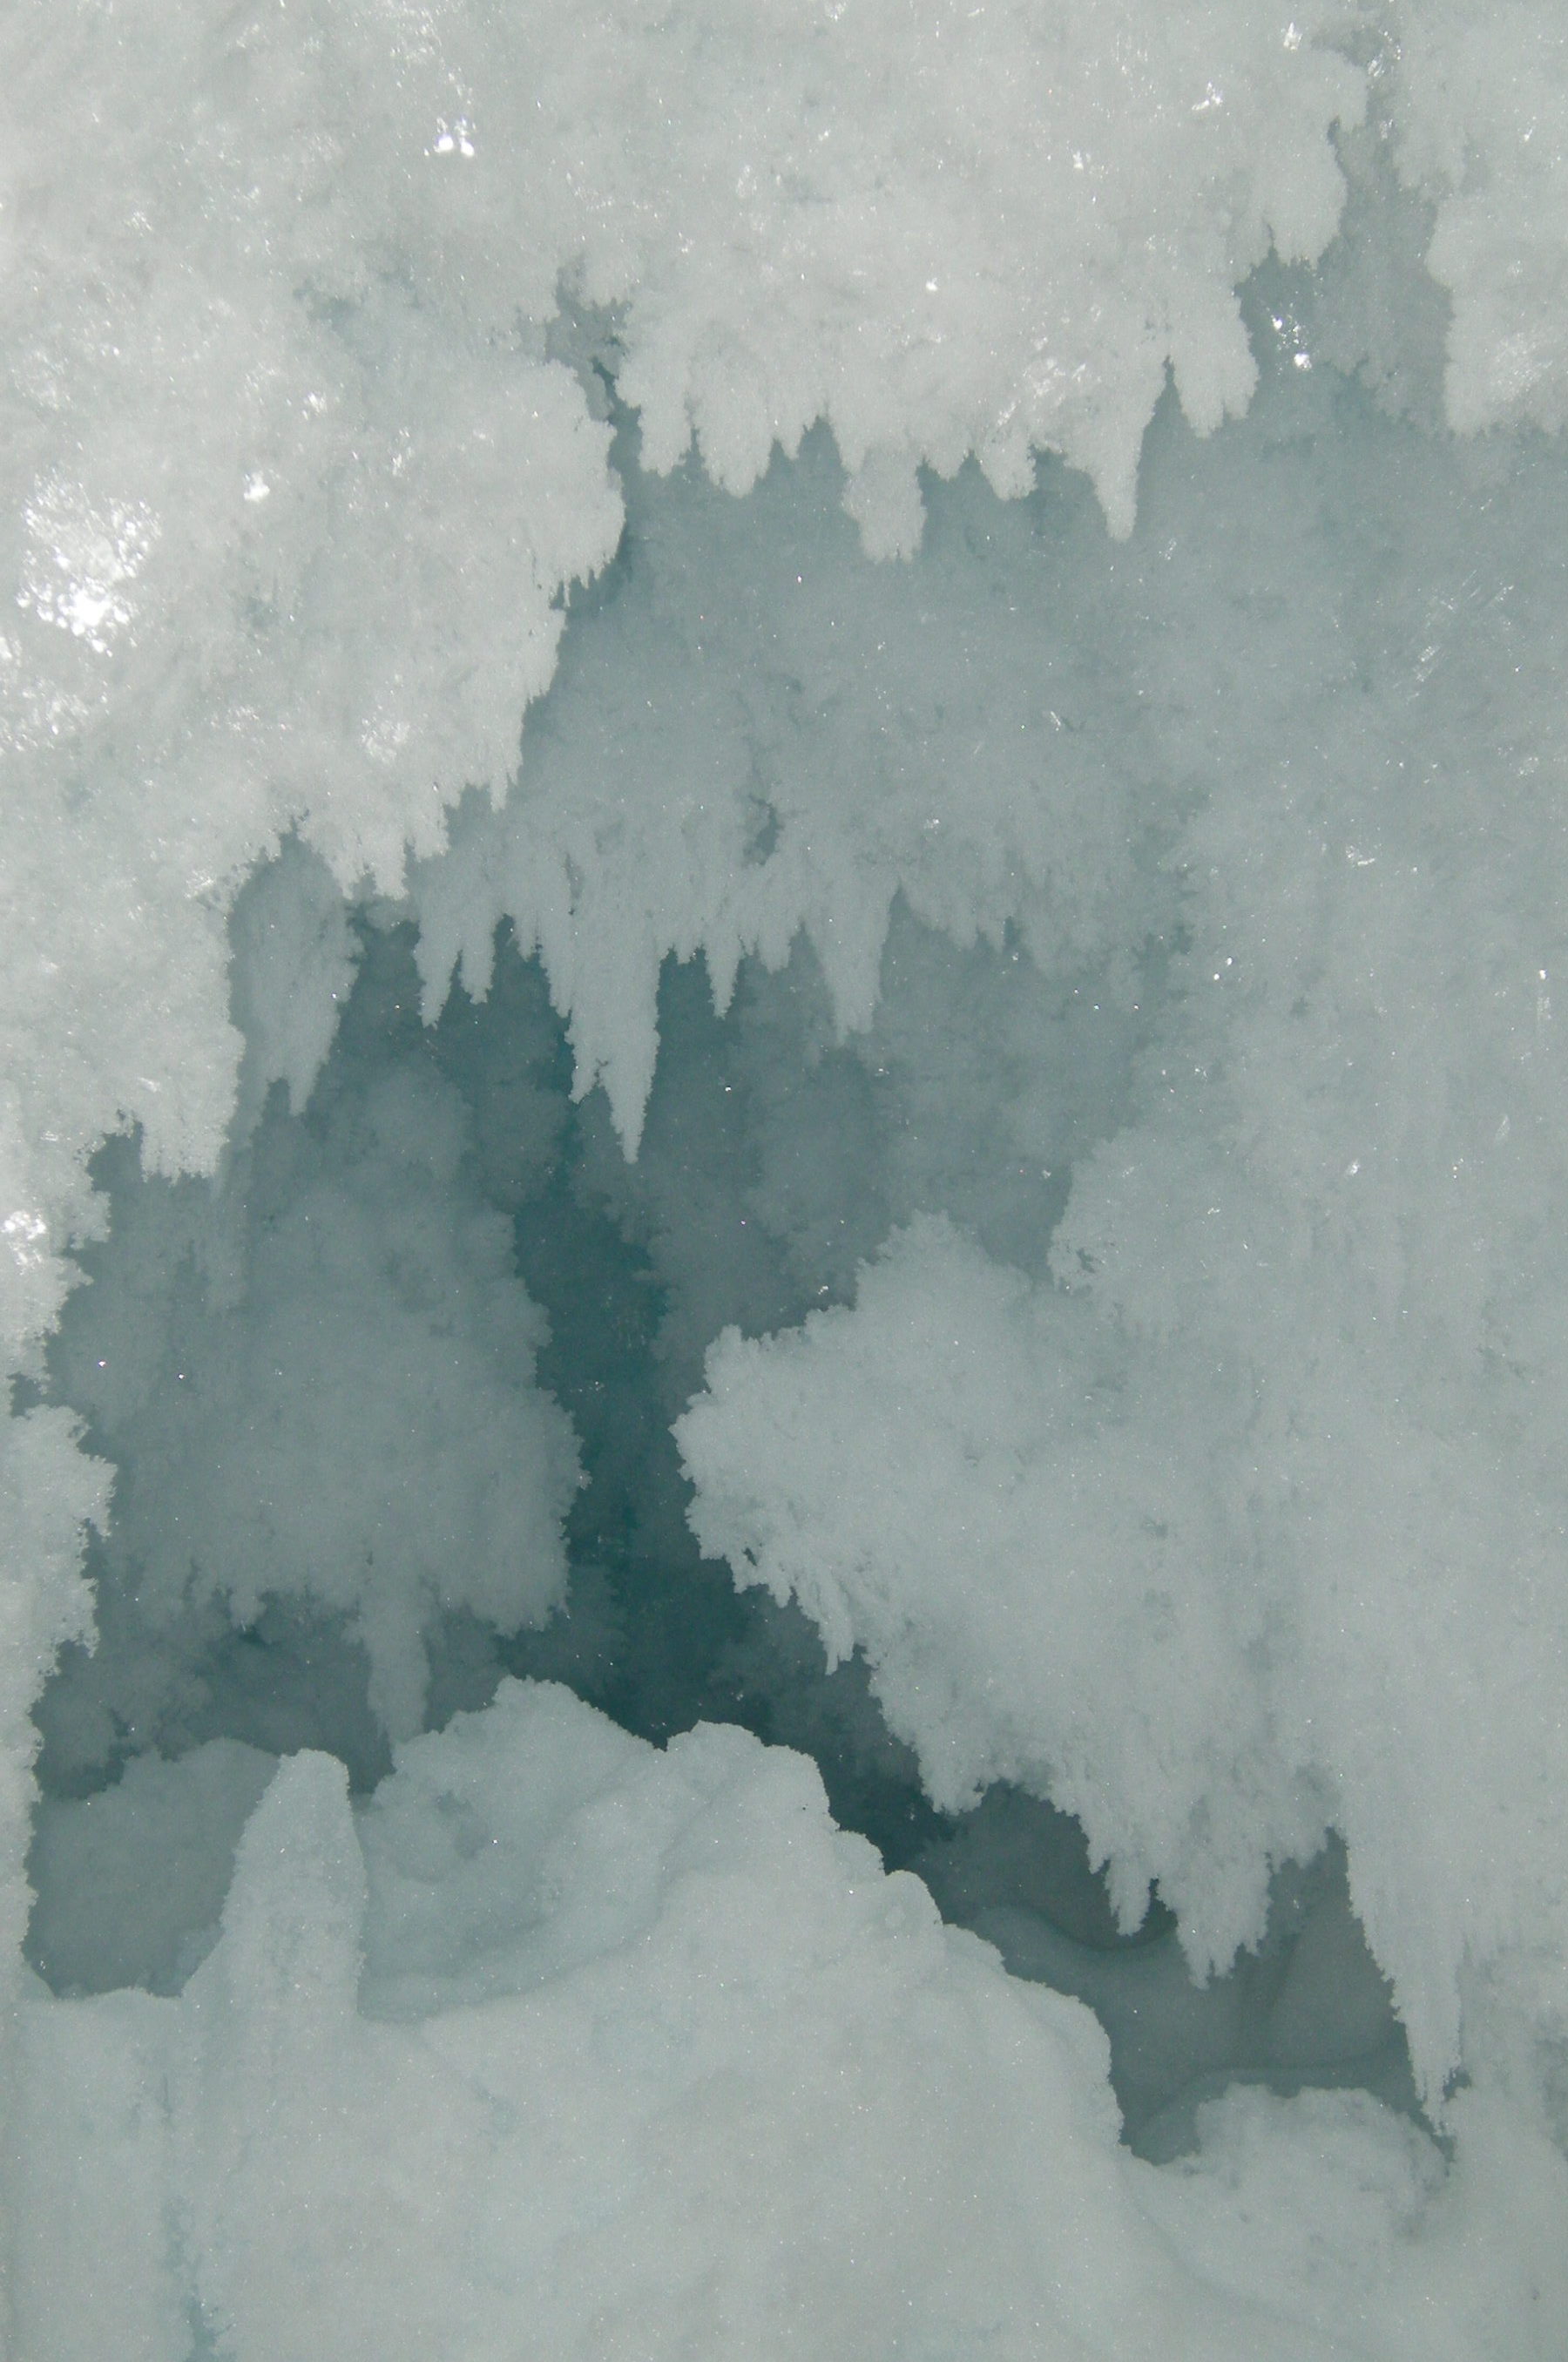 A room full of diamonds inside the Erebus Glacier